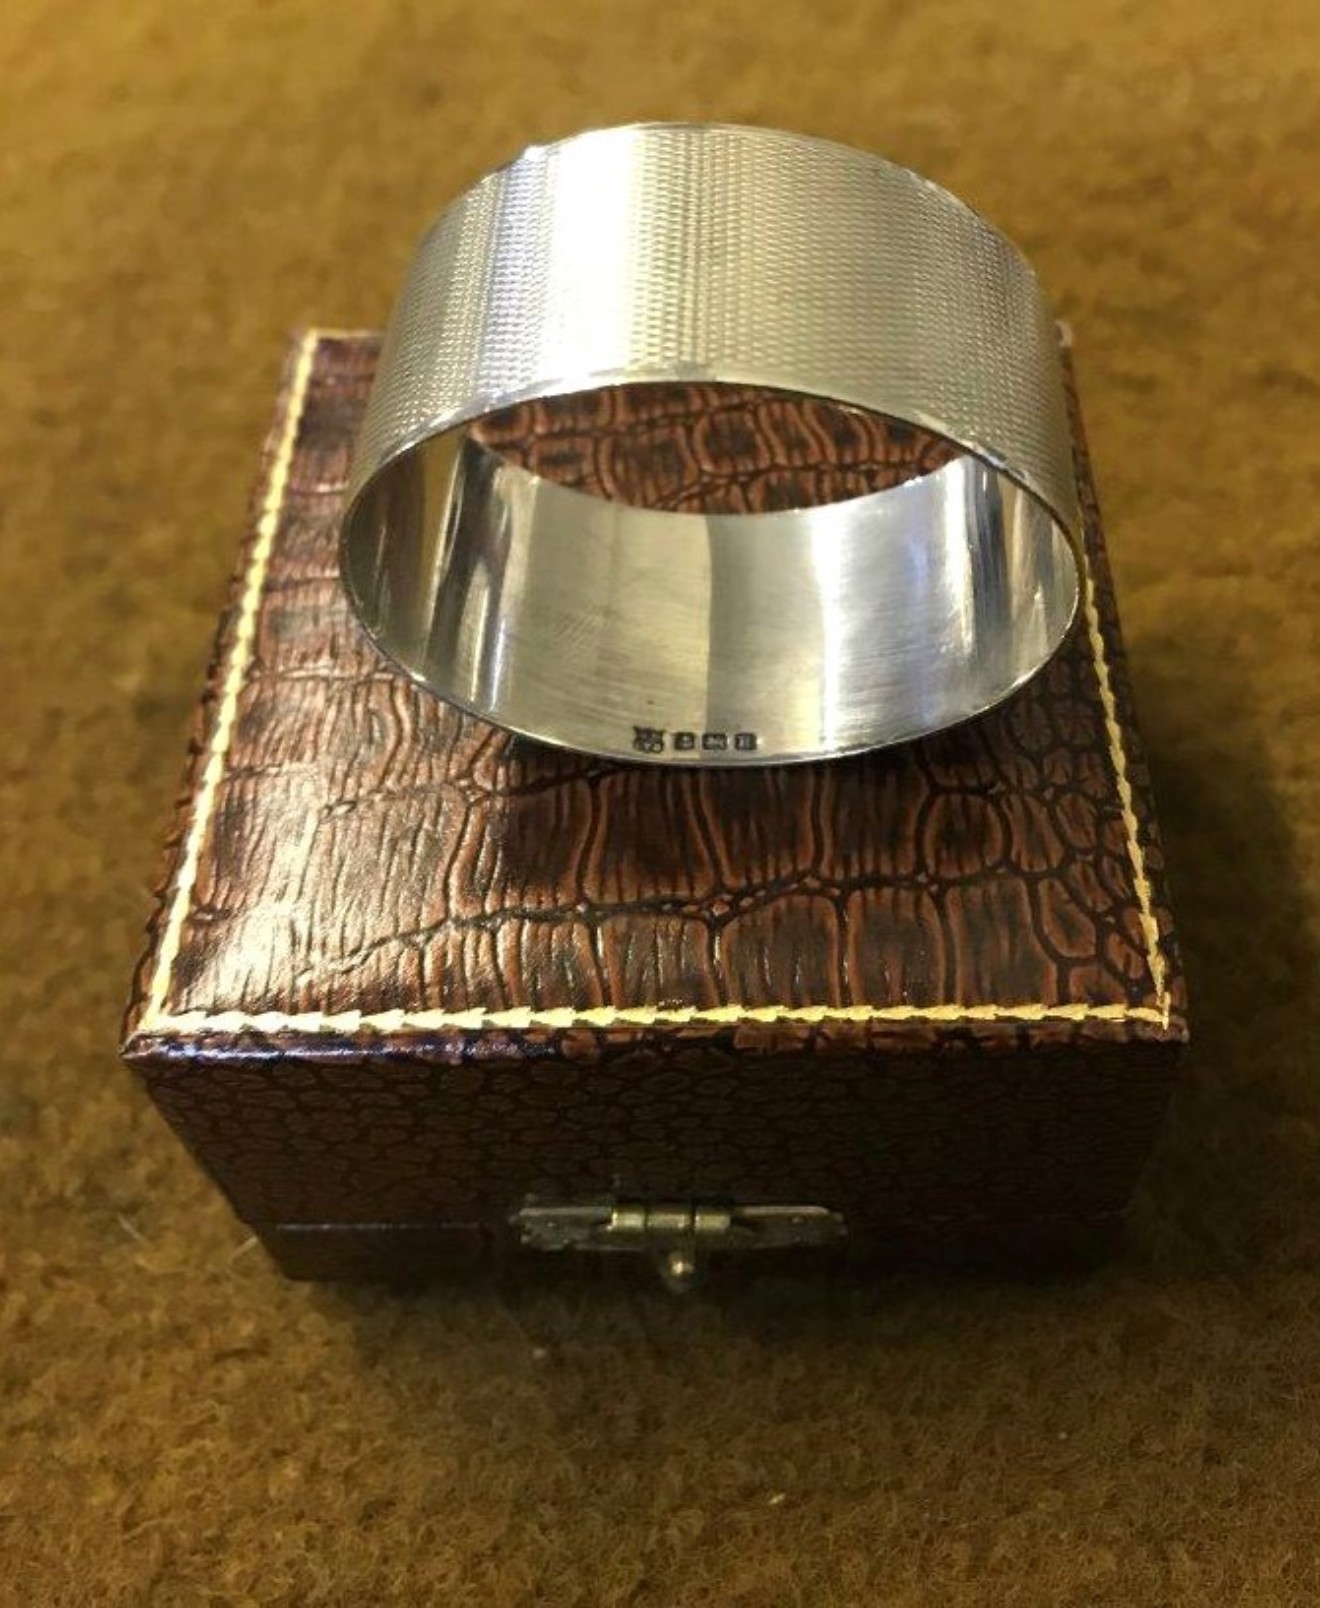 Vintage Sterling Silver Napkin Ring Monogramed CAM